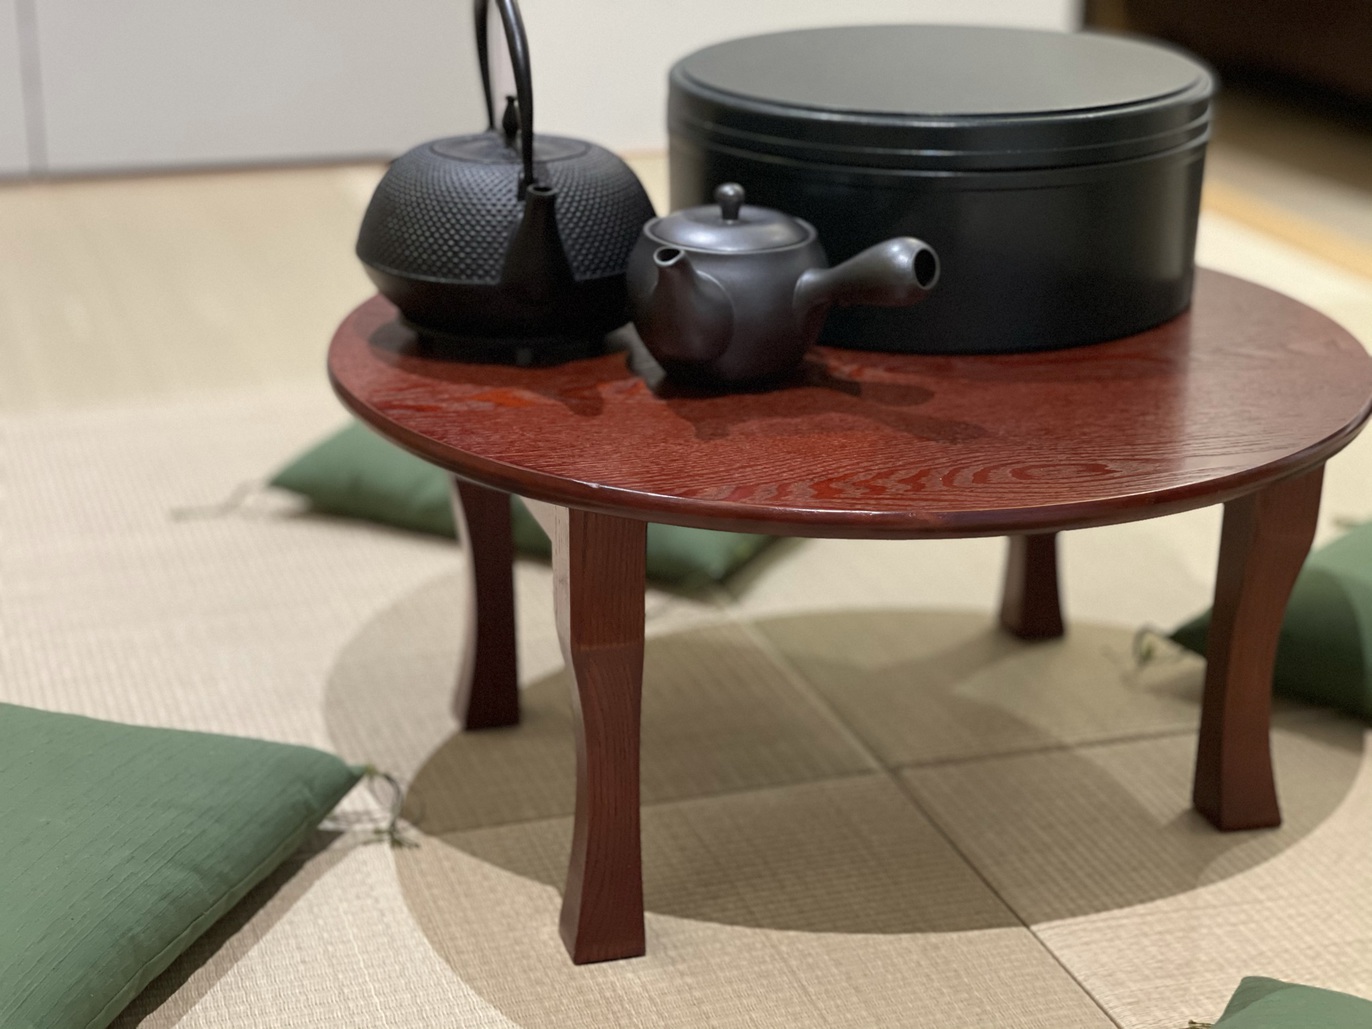 琉球畳の小上がりと南部鉄器の茶器